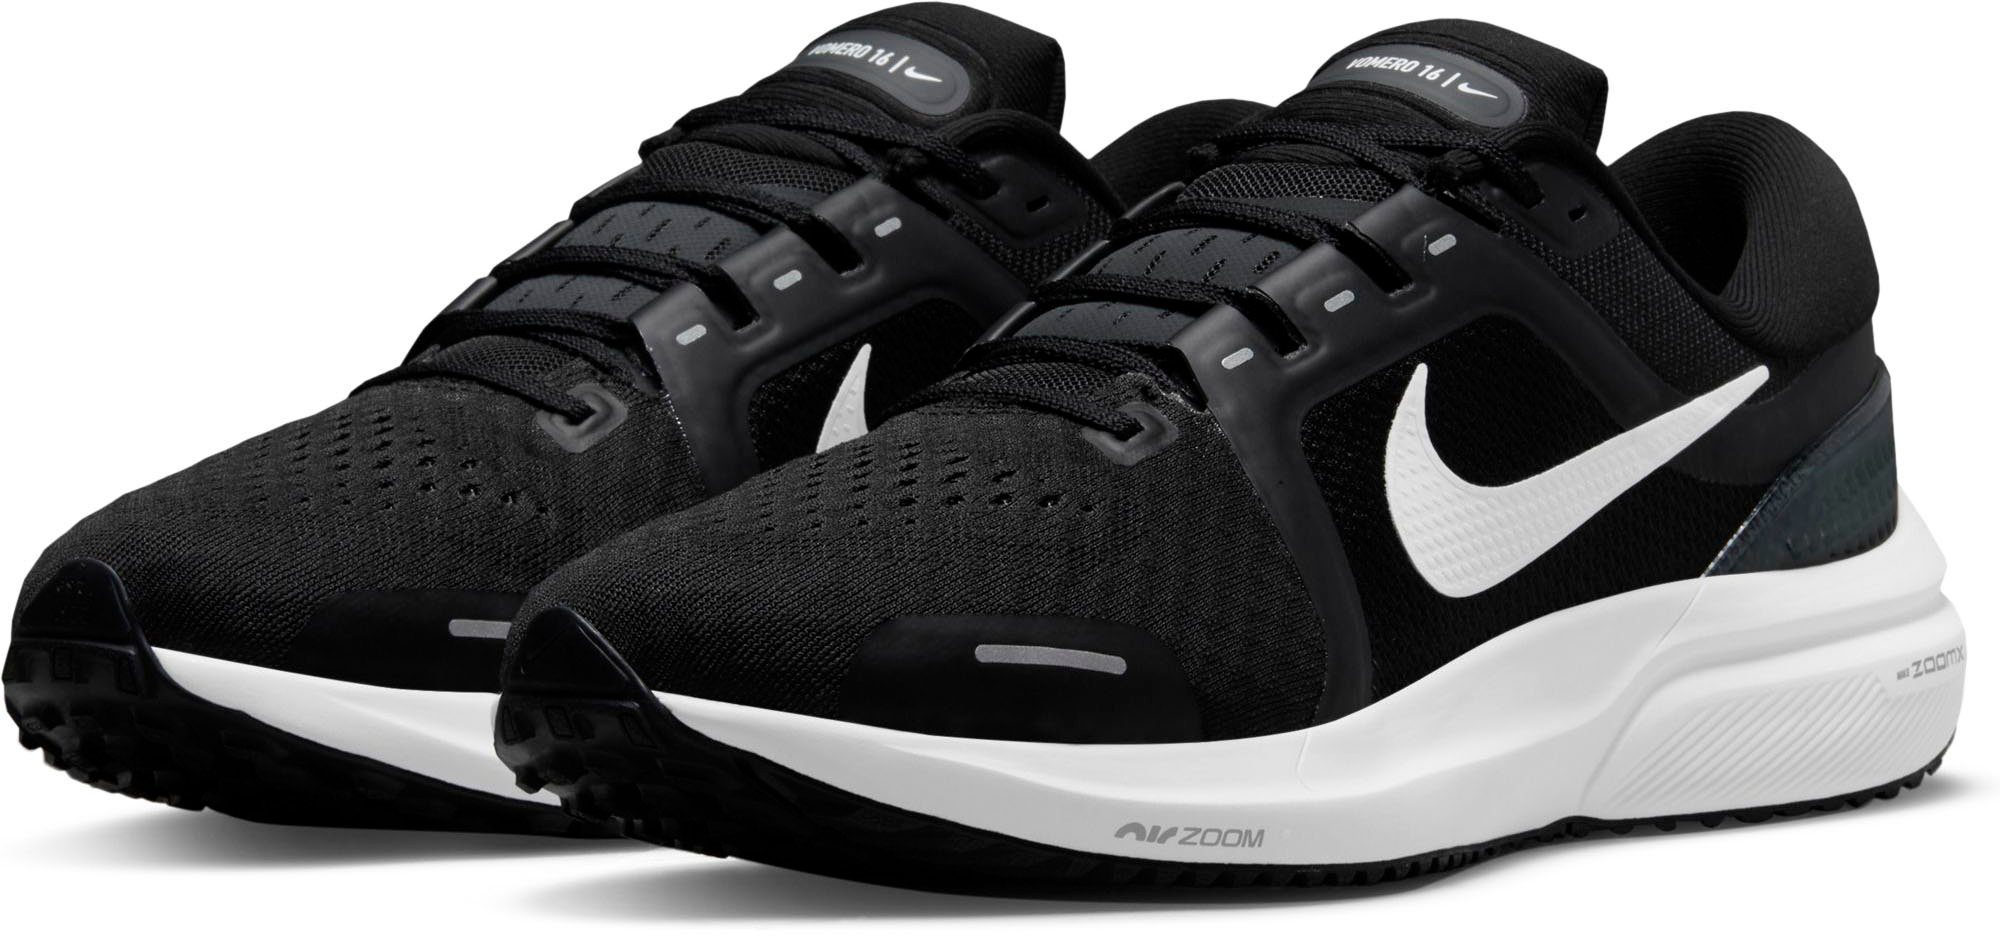 Schwarze Nike Schuhe online kaufen | OTTO